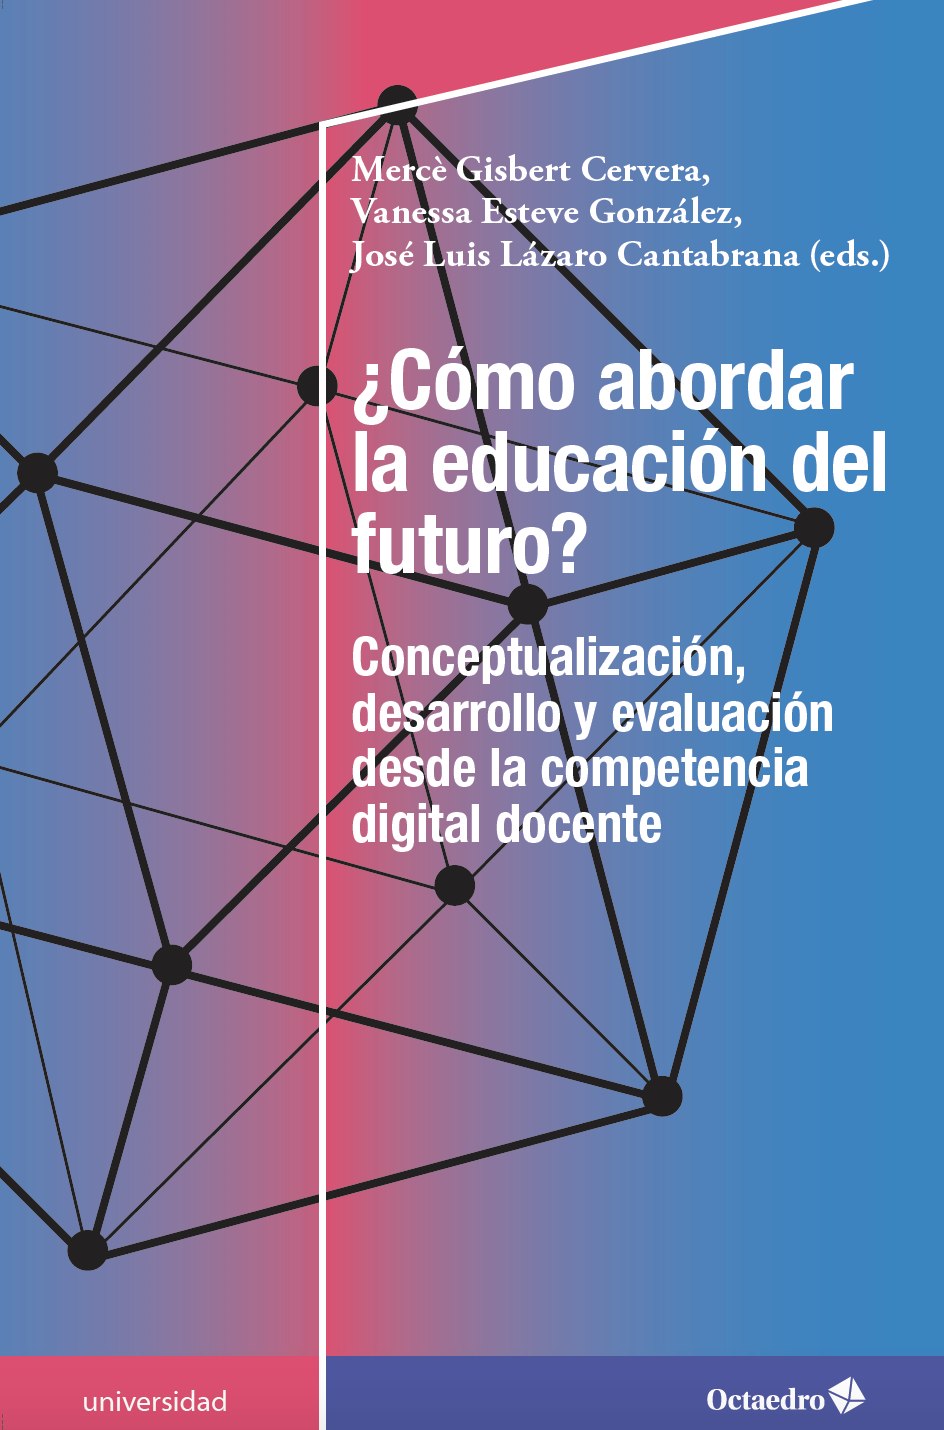 Nueva publicación - ¿CÓMO ABORDAR LA EDUCACIÓN DEL FUTURO?